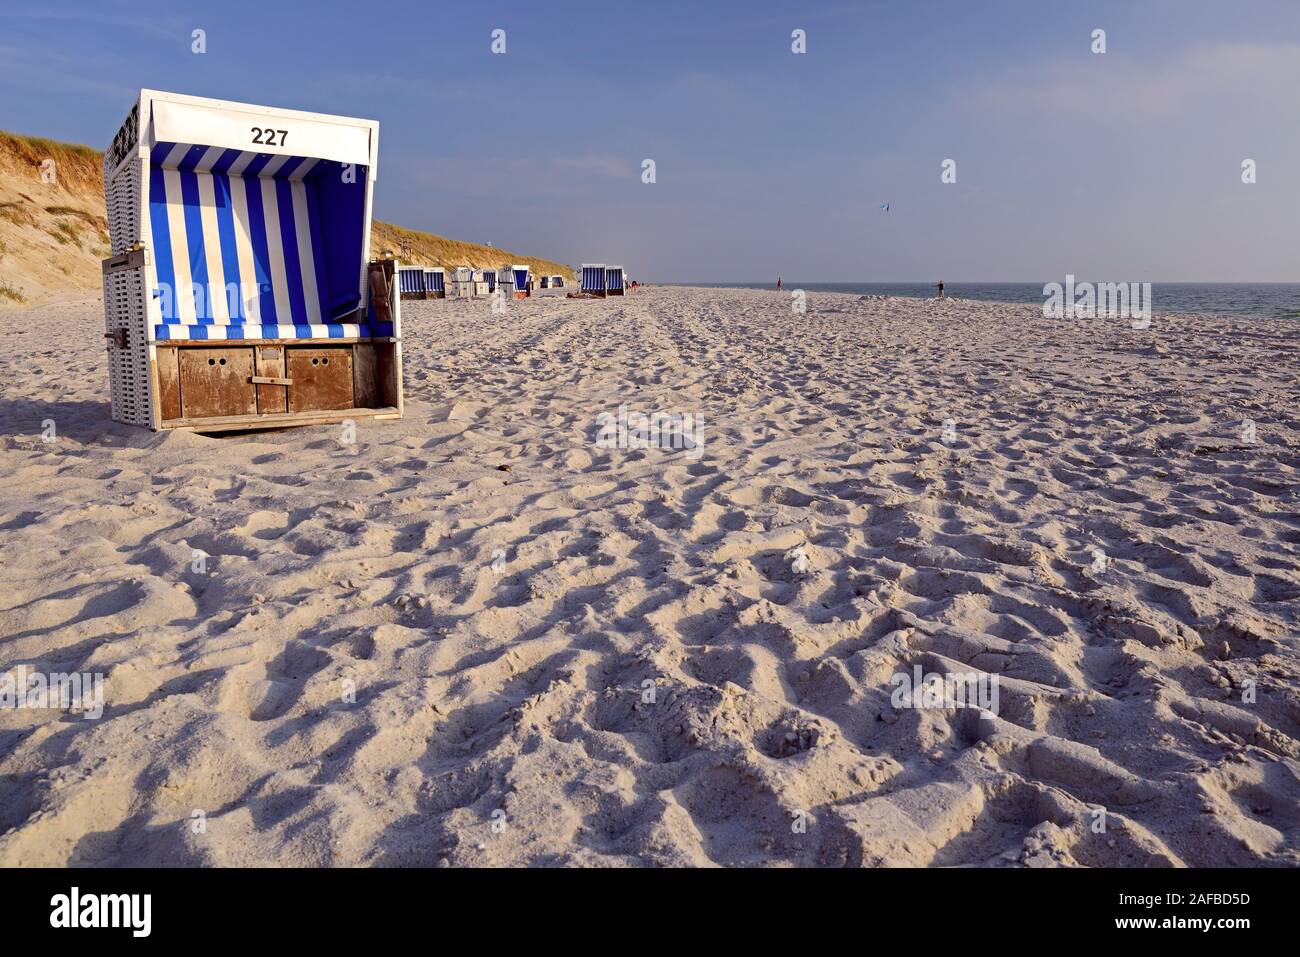 Strandkorb am Hauptstrand von Rantum am Abend, Sylt, nordfriesische Inseln, Nordfriesland, Schleswig-Holstein, Deutschland Stock Photo